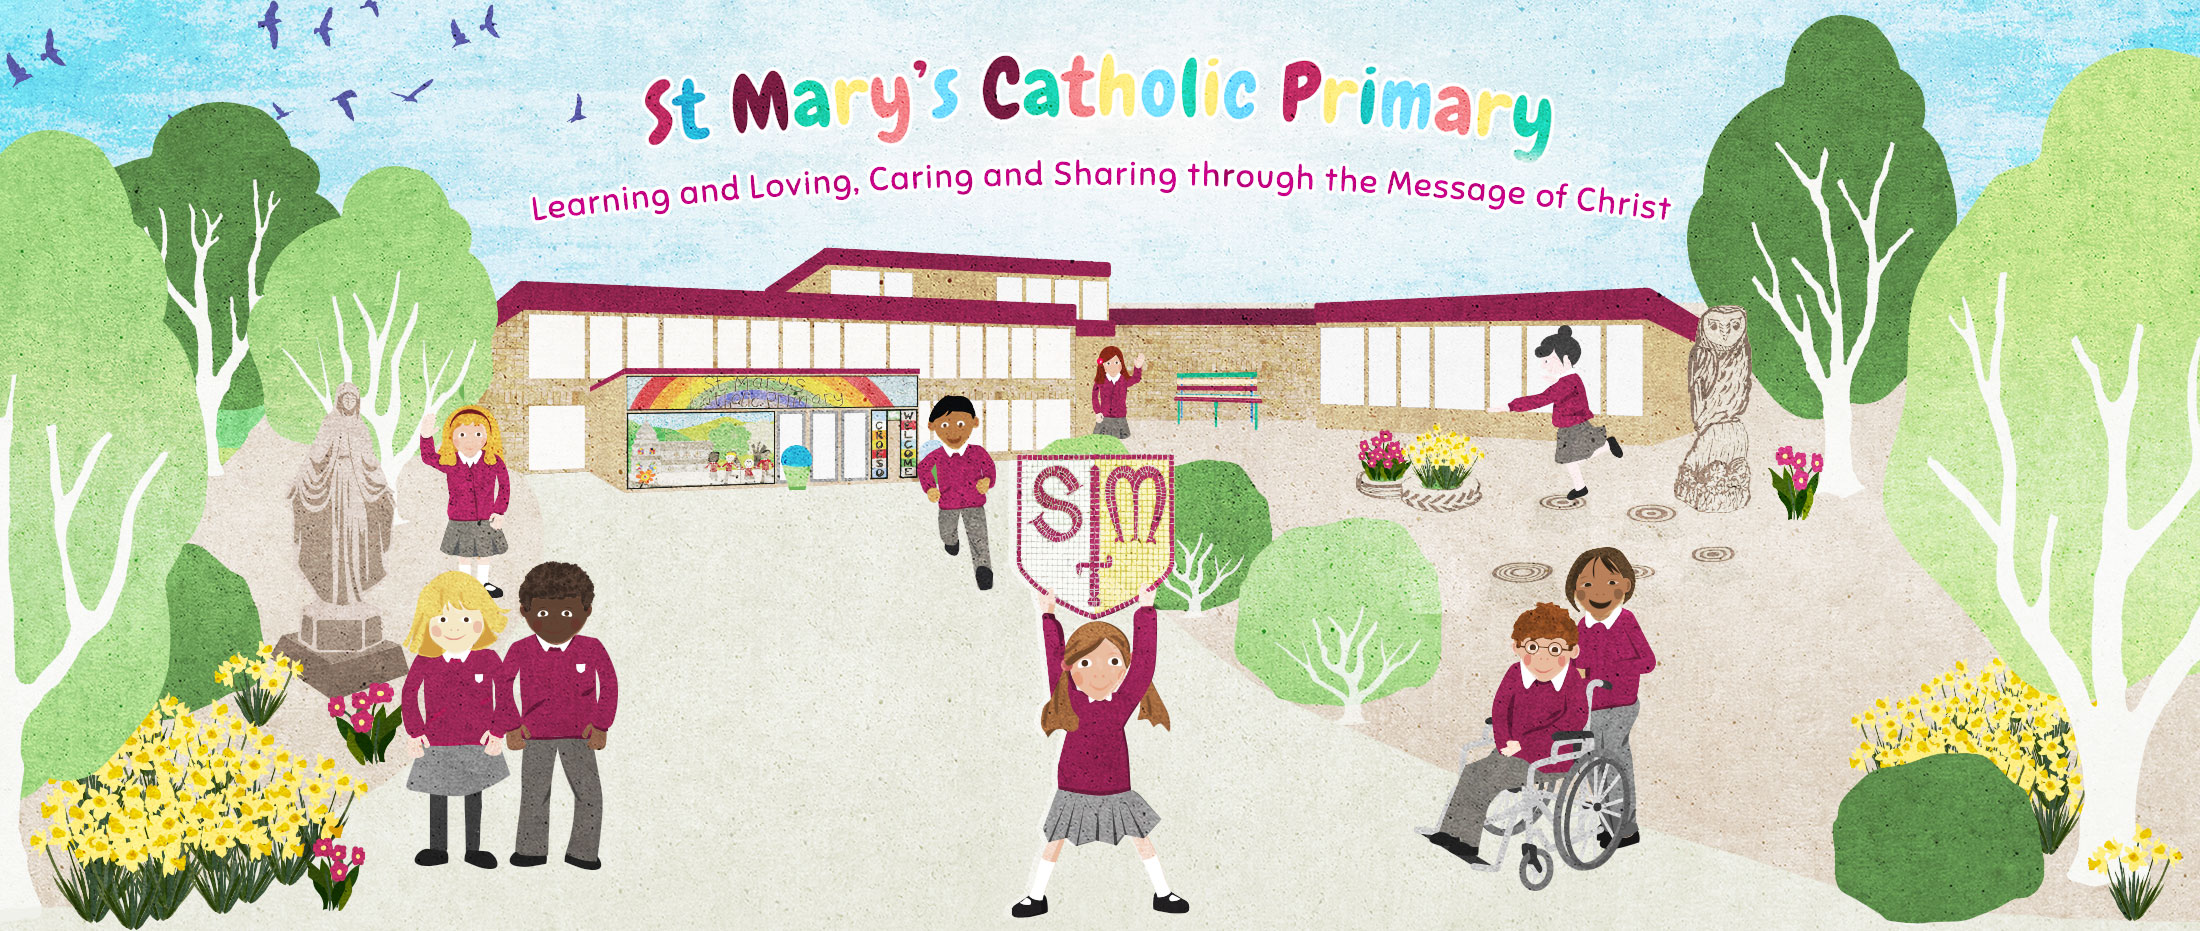 St Mary’s Catholic Primary School, Wrexham